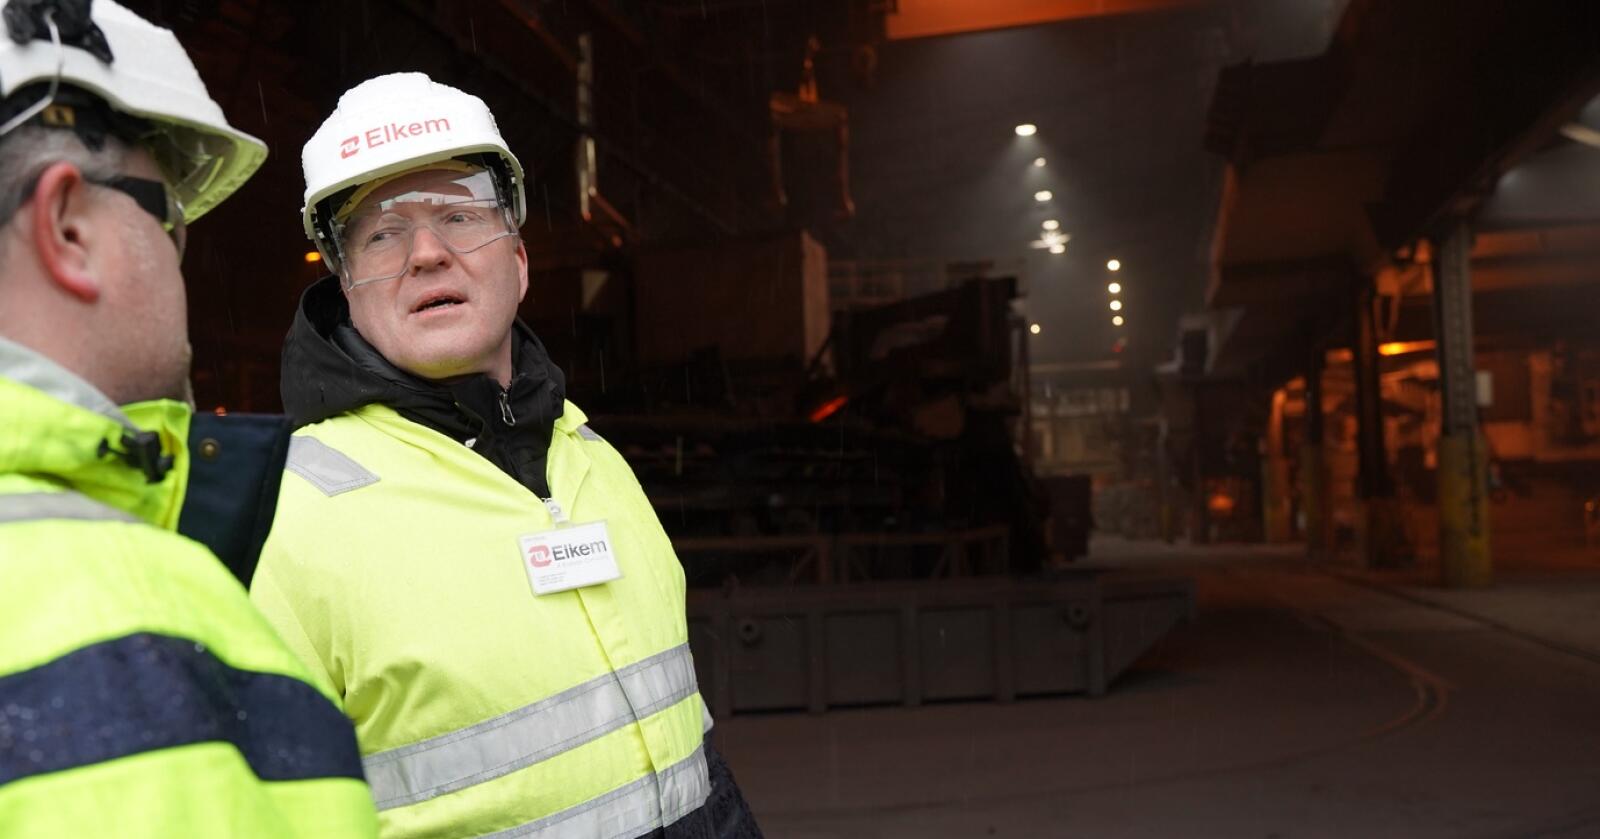 Etter å ha besøkt flere kraftkrevende industrivirksomheter i Nord-Norge er Sigbjørn Gjelsvik (Sp) sikker i sin sak - krafta må forbli der der den produseres, mener han. Foto: Andrea Ånestad